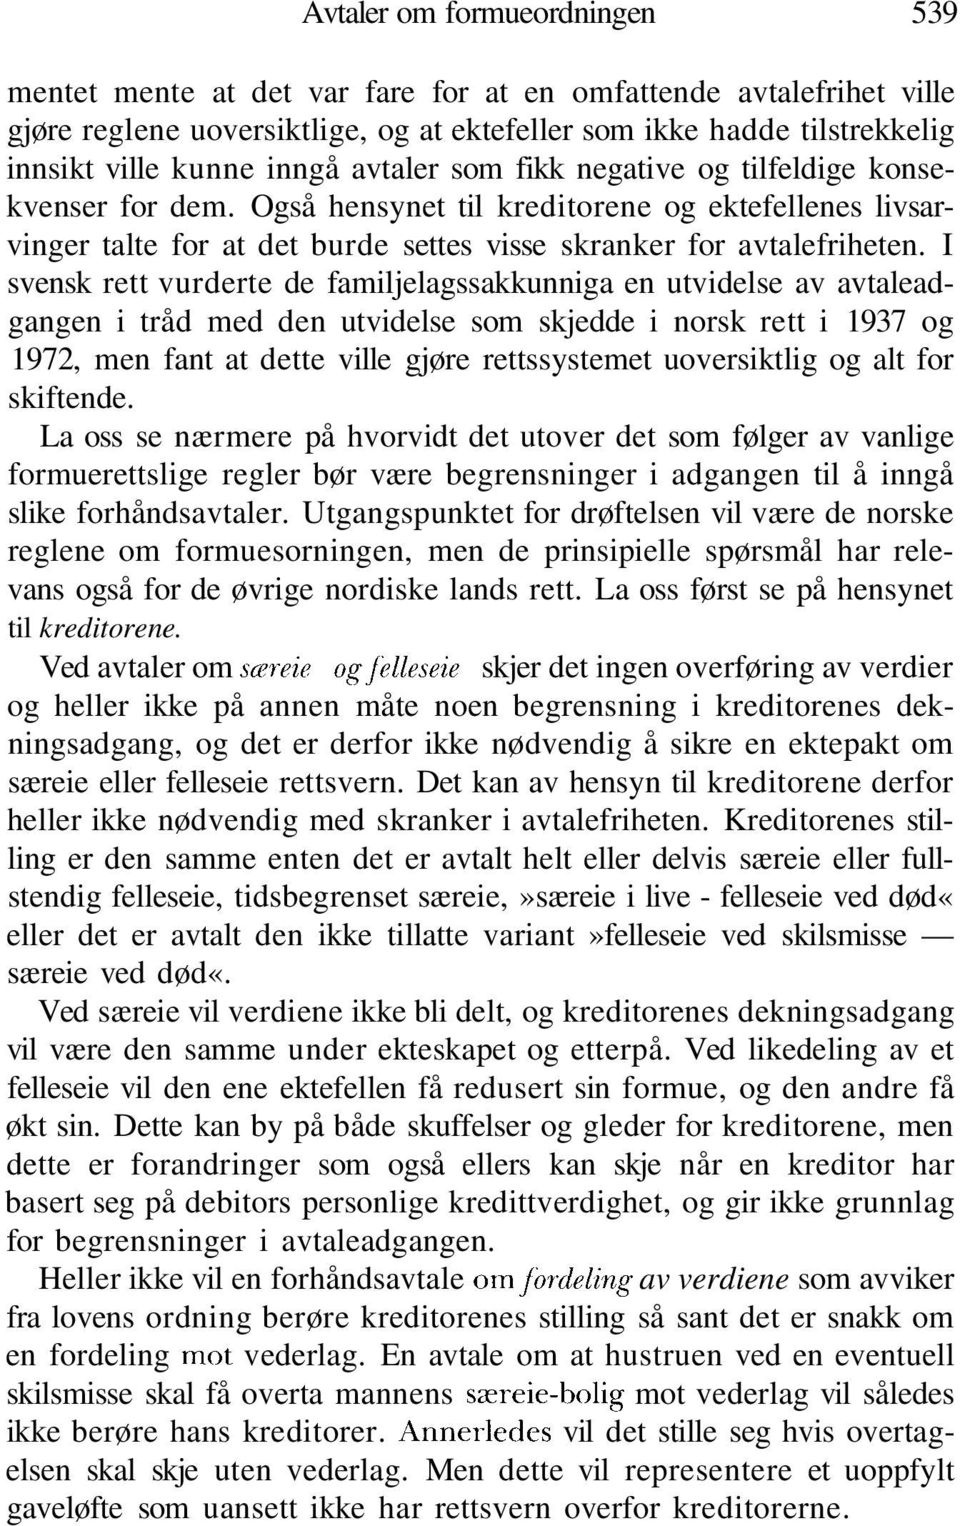 I svensk rett vurderte de familjelagssakkunniga en utvidelse av avtaleadgangen i tråd med den utvidelse som skjedde i norsk rett i 1937 og 1972, men fant at dette ville gjøre rettssystemet